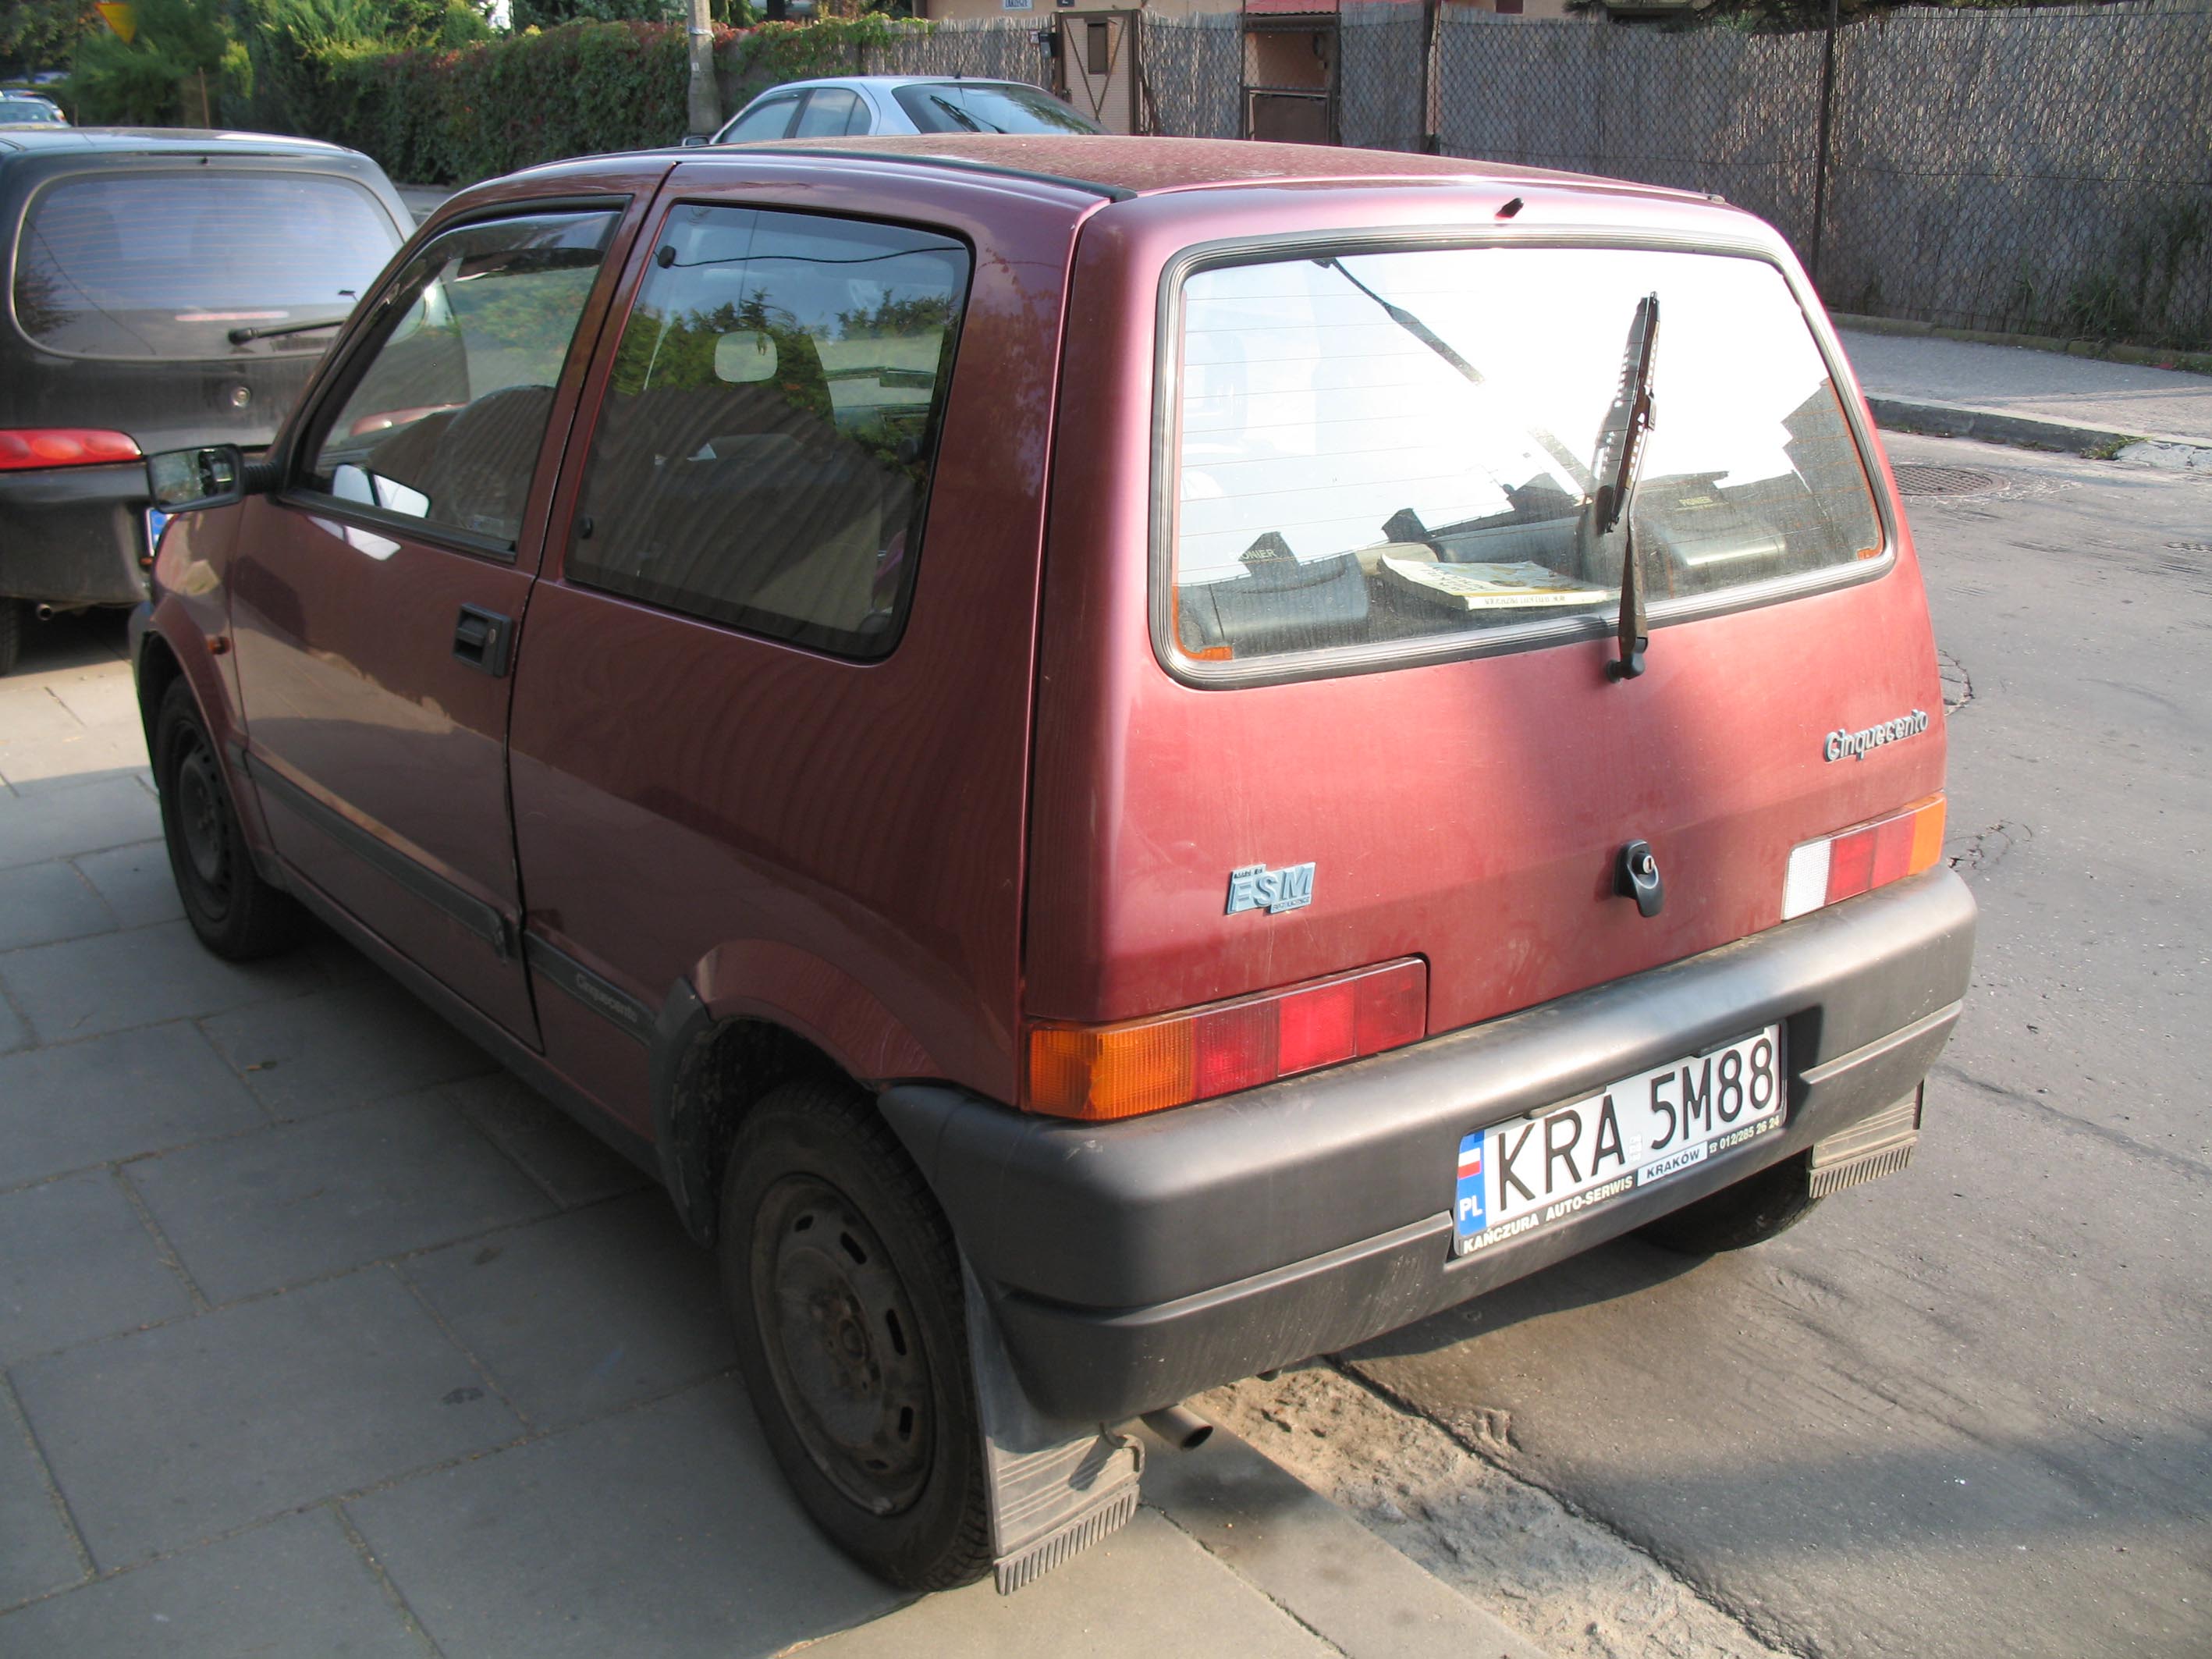 File:Fiat 500 C rear 20100405.jpg - Wikimedia Commons